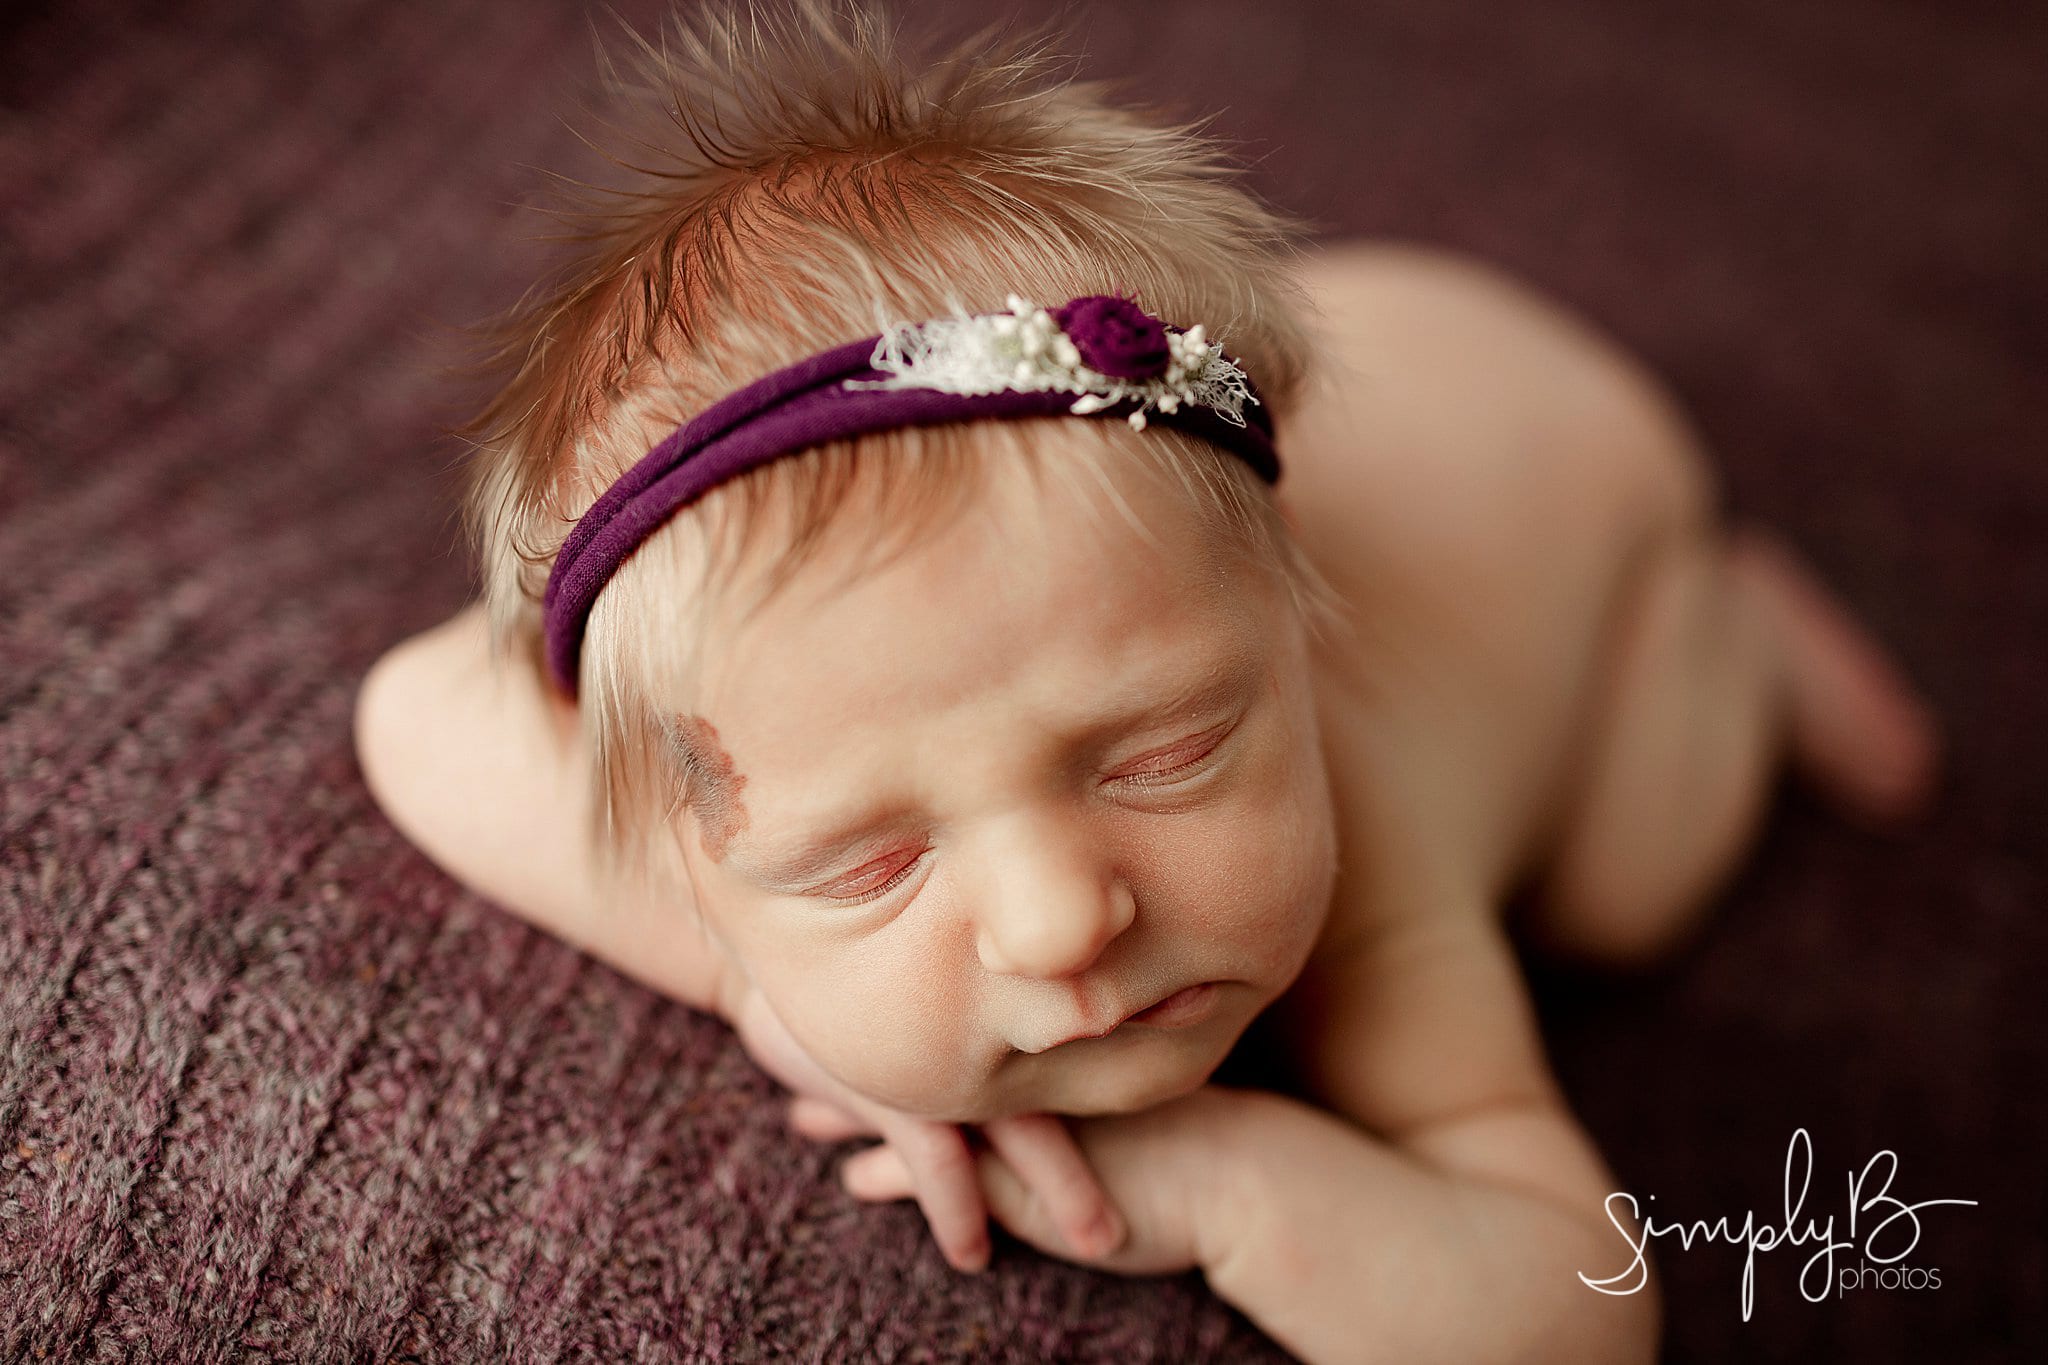 Edmonton Newborn Photographer baby girl